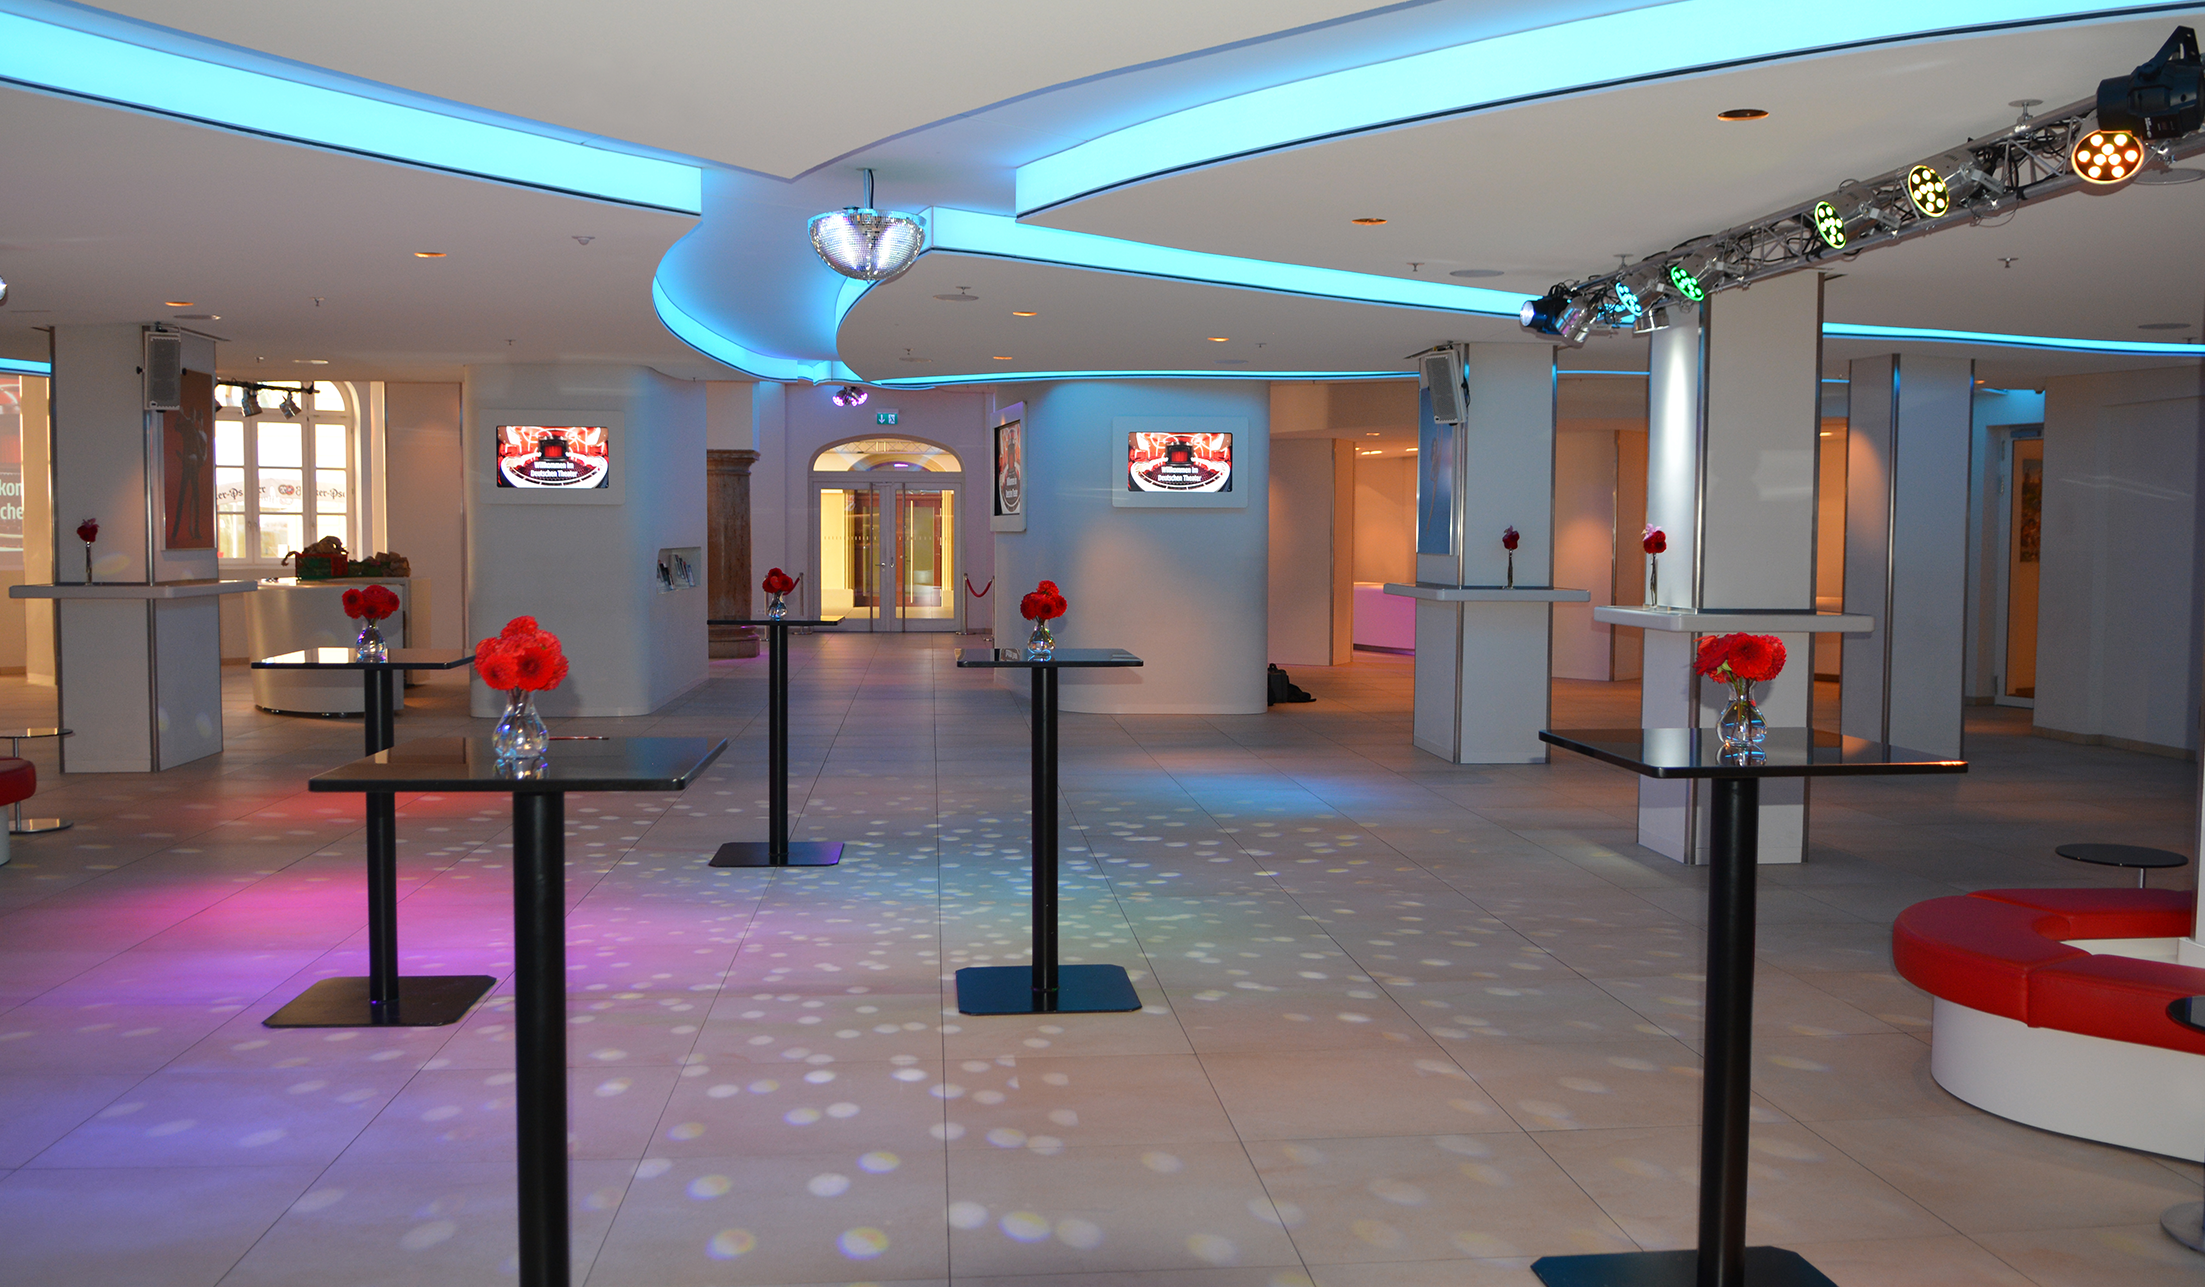 stilvoll beleuchtetes Foyer mit Tischen udn roten Blumen im deutschen Theater München